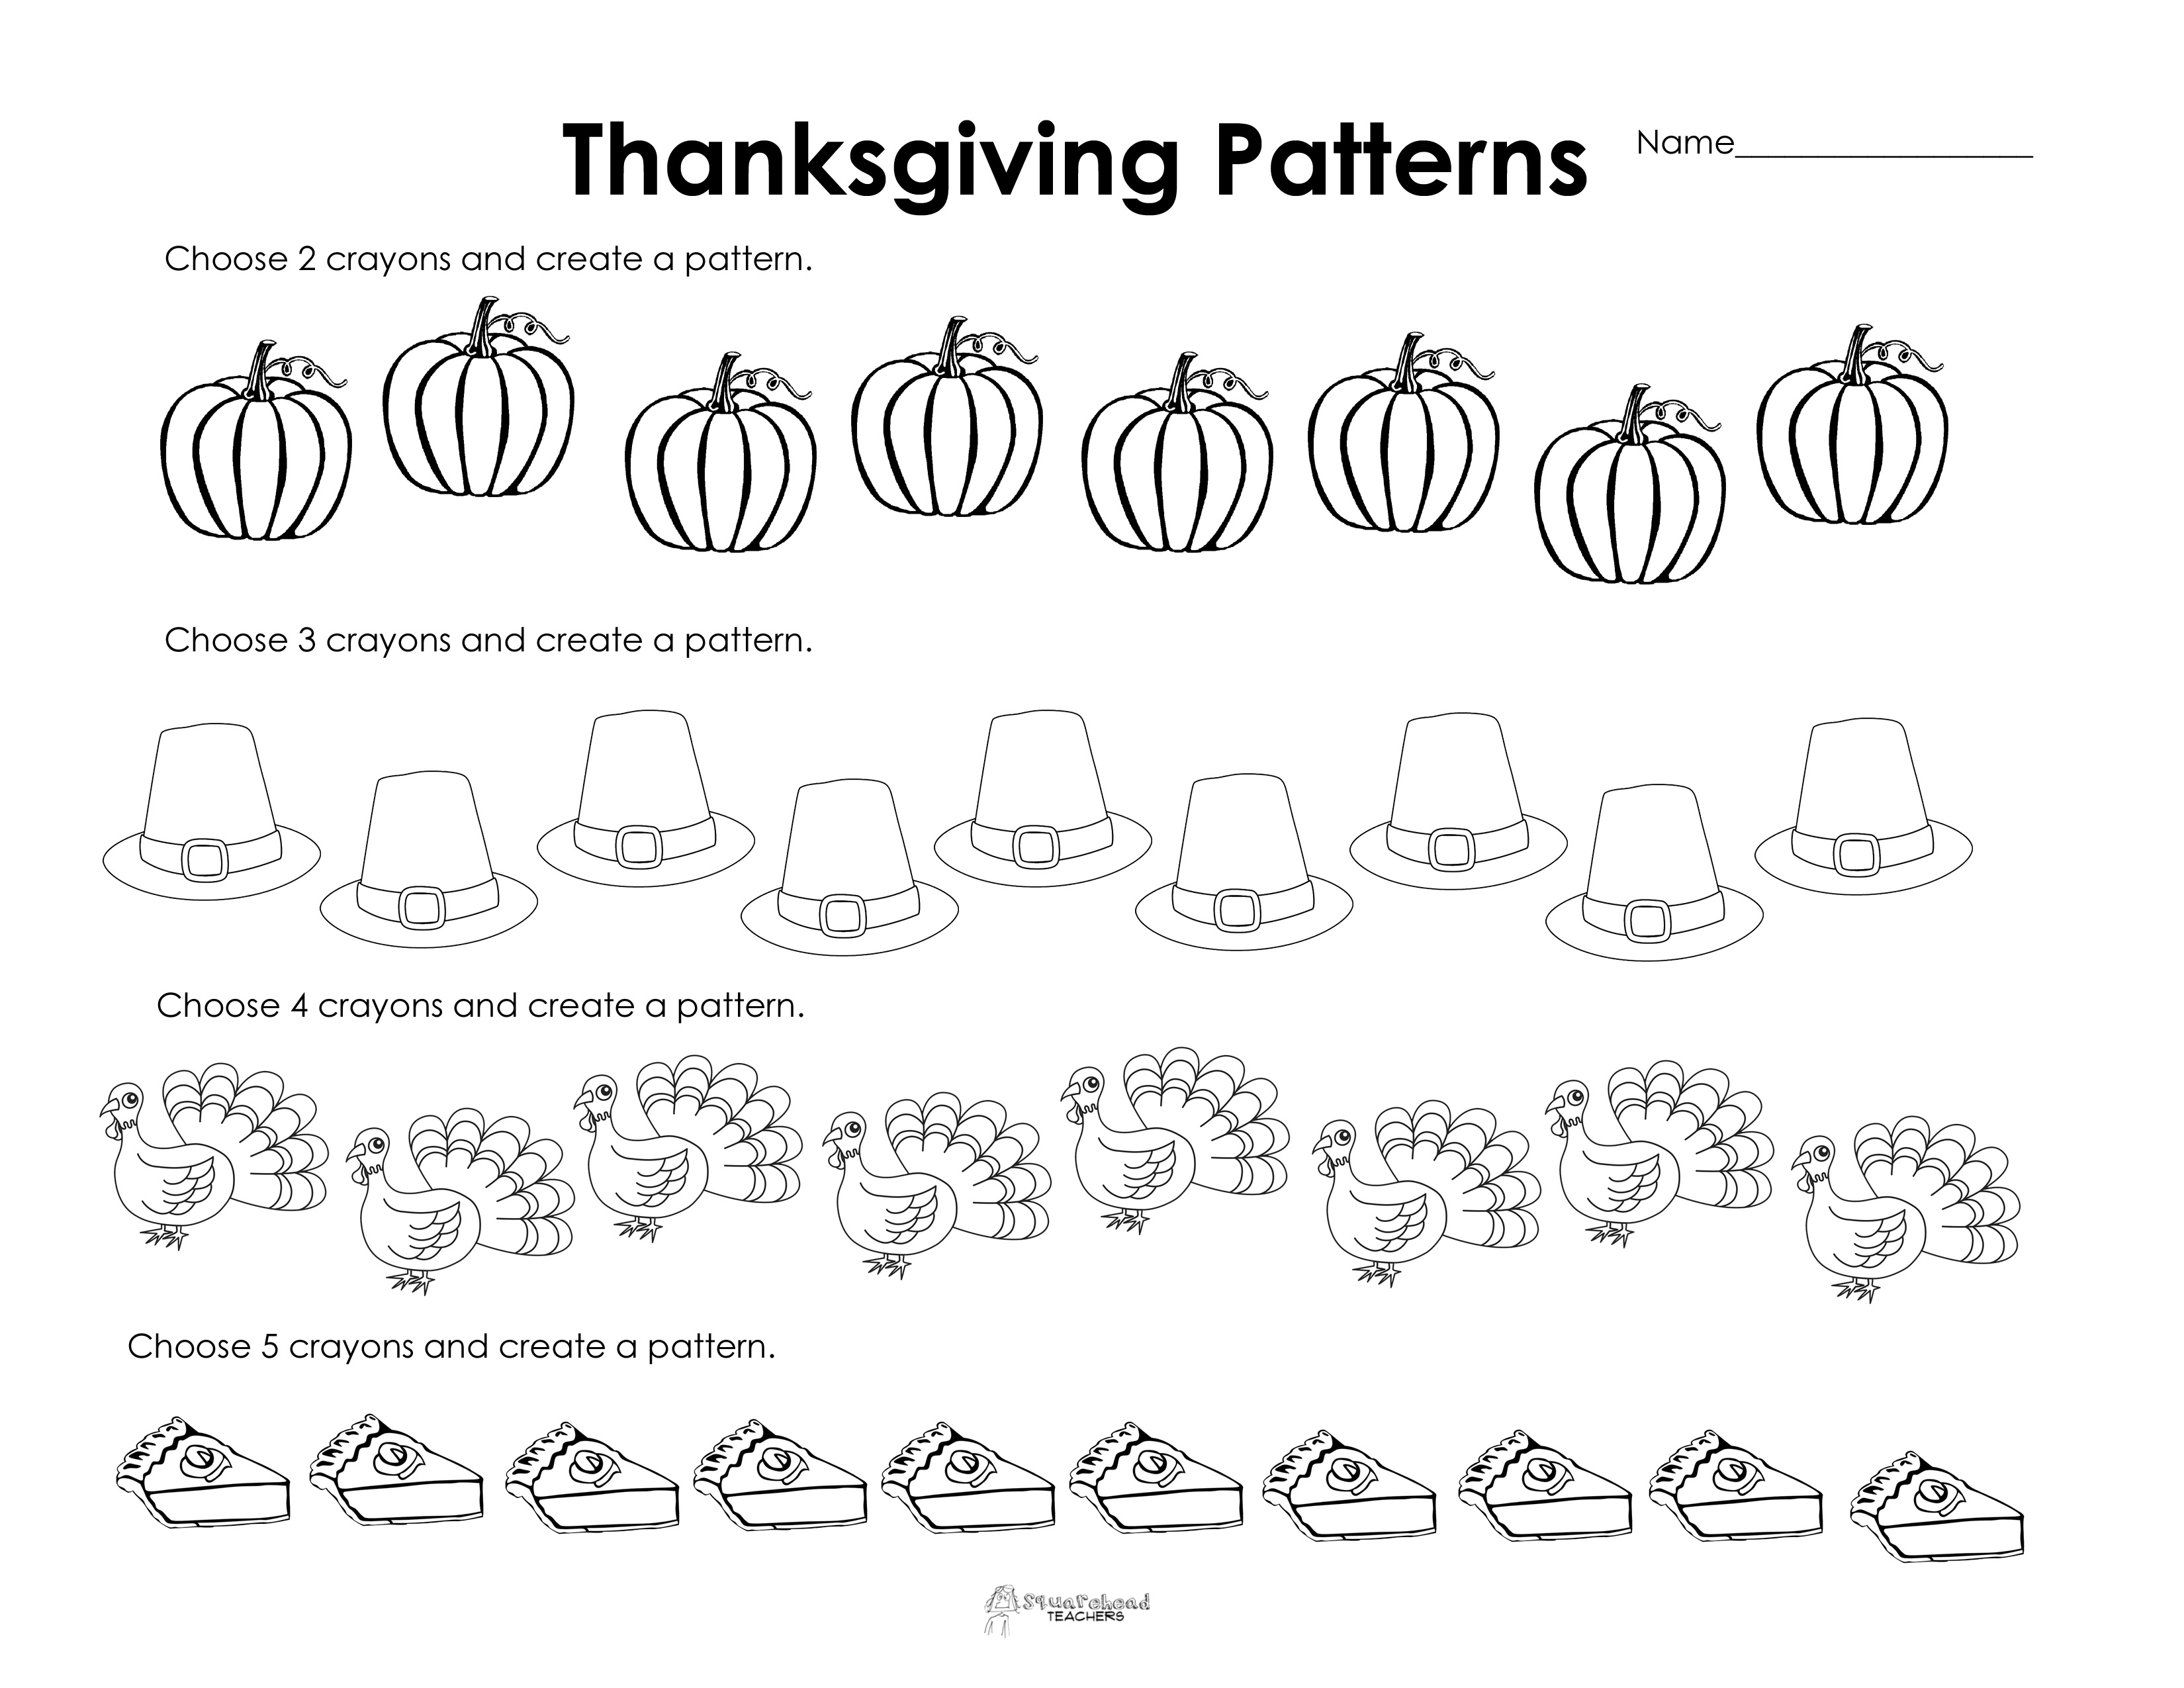 Making Patterns: Thanksgiving Style (Free Worksheet!) | Squarehead - Math Worksheets Thanksgiving Free Printable